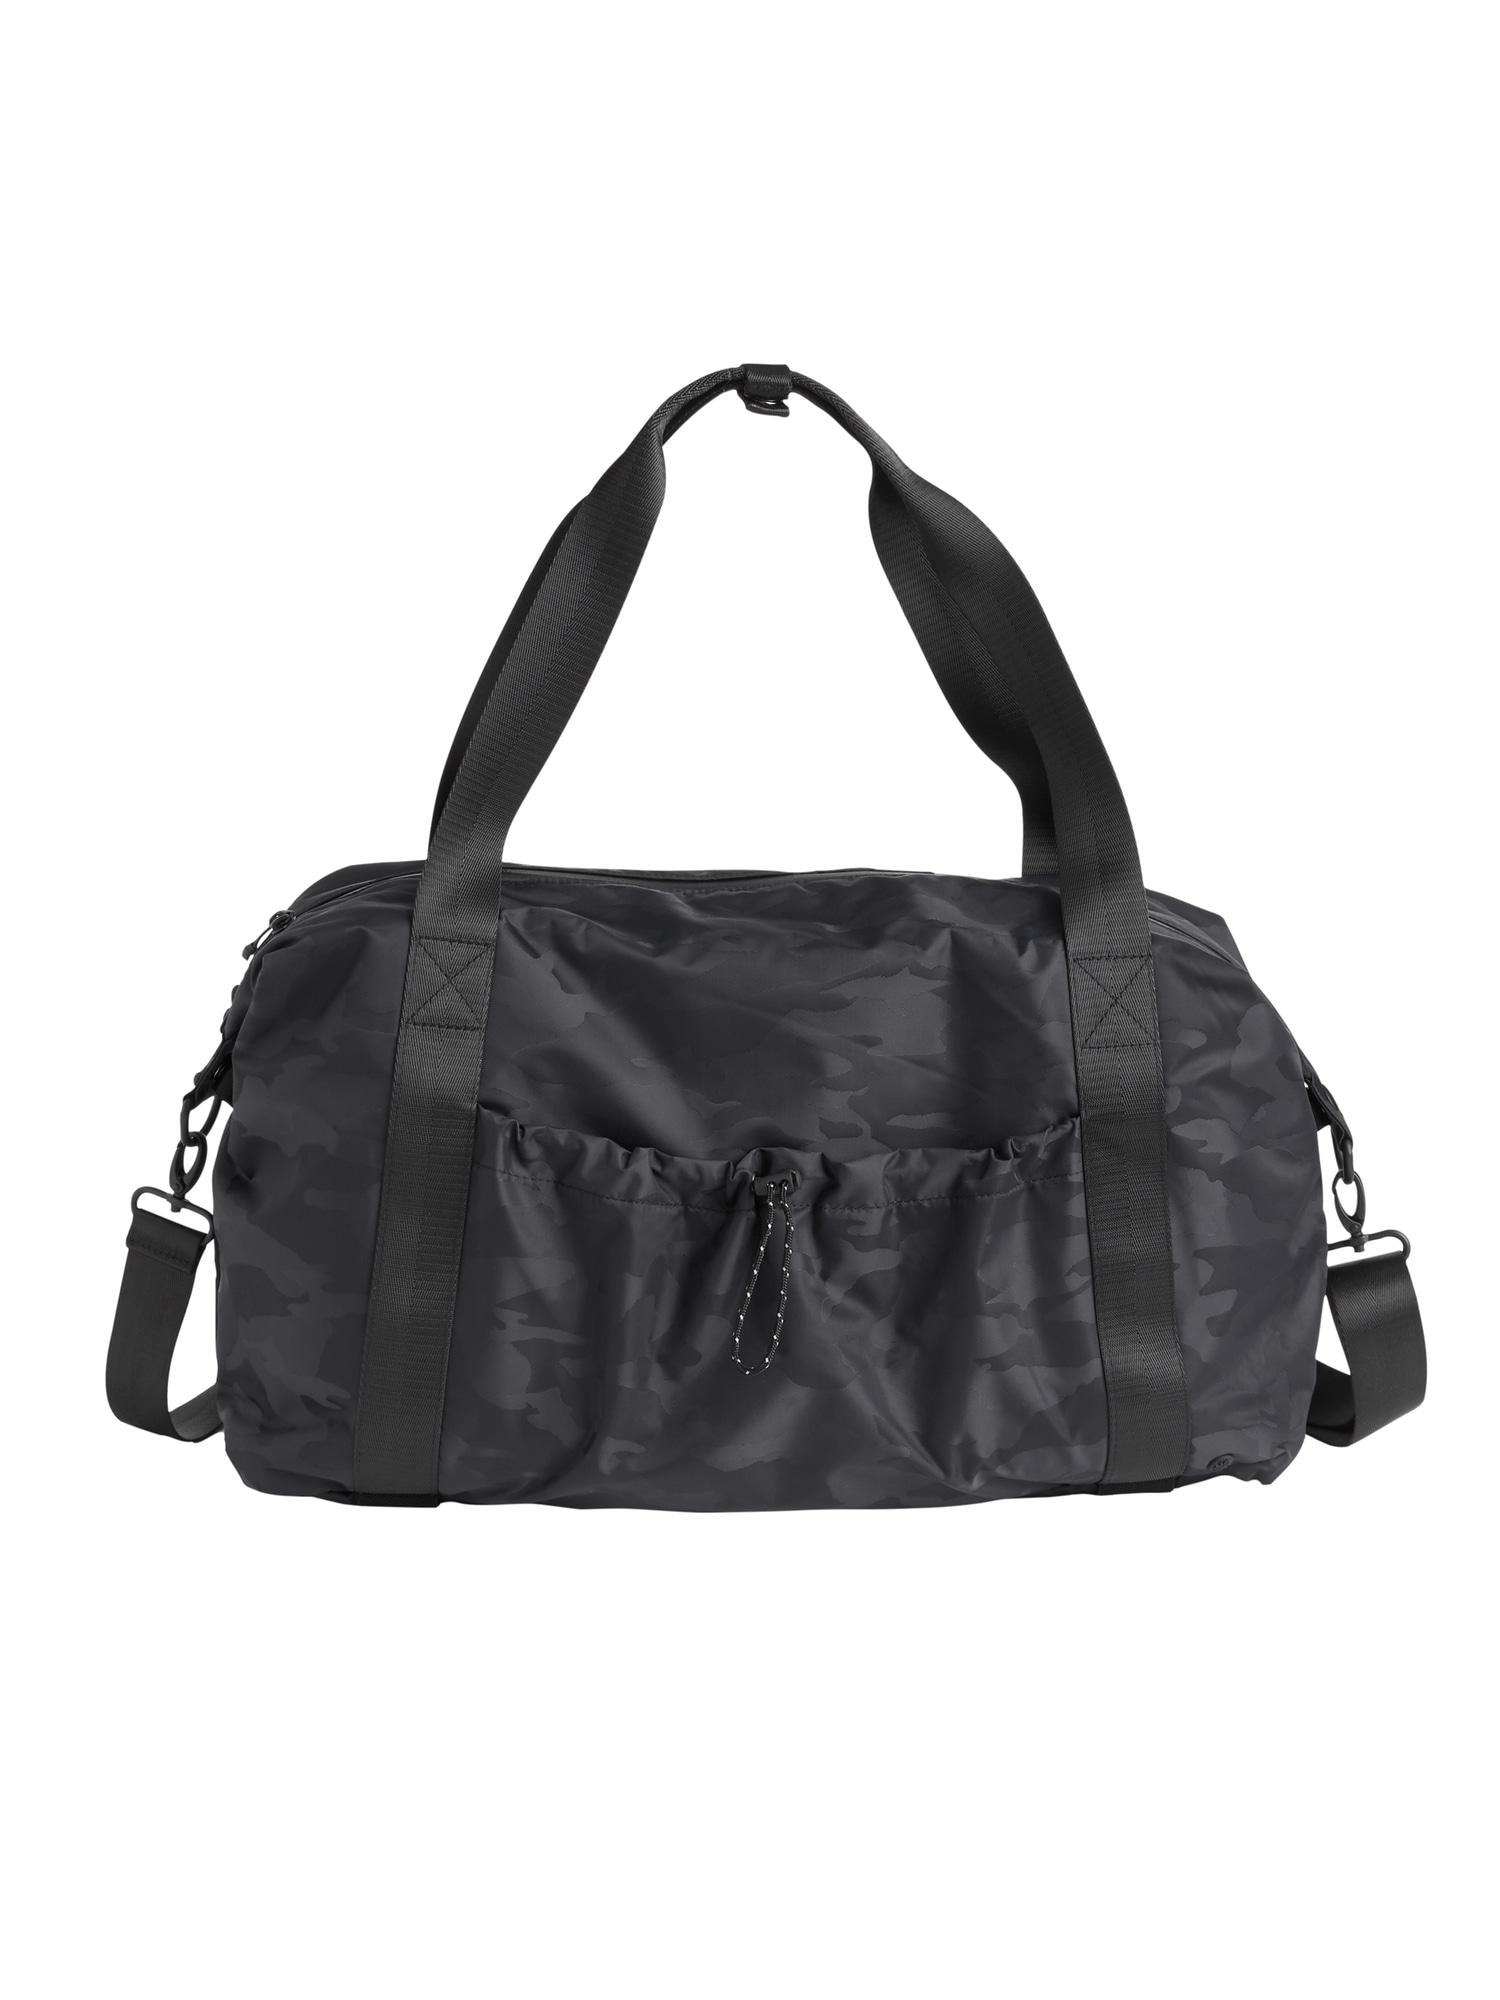 Athleta Synthetic Urban Gym Bag in Black Camo (Black) | Lyst